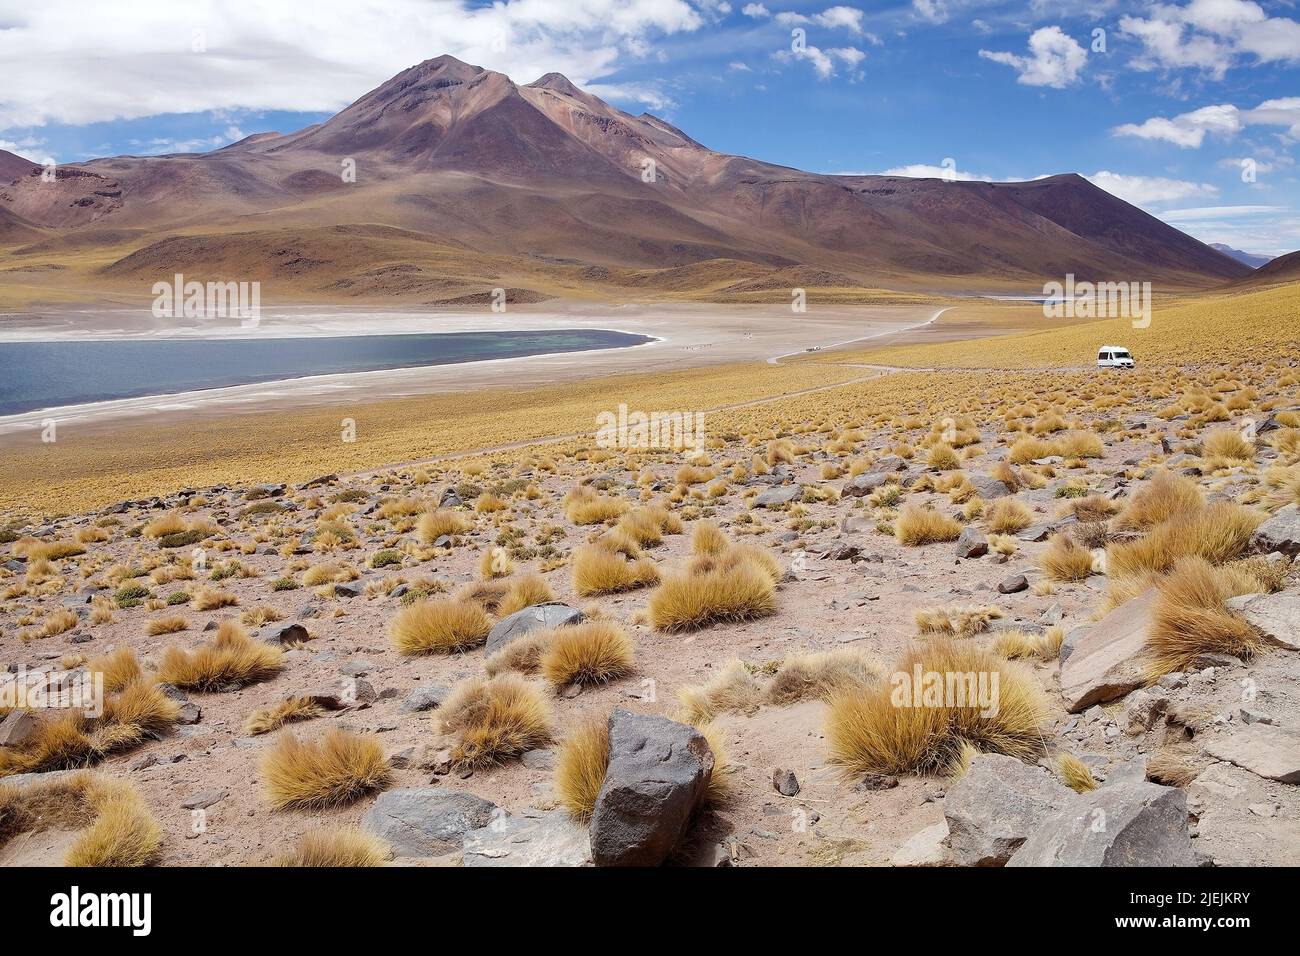 La Laguna di Miscanti è un lago d'acqua salmastra situato a 4000 metri sopra il livello del mare nella regione di Antofagasta nel Cile settentrionale, a circa 100 km da San Foto Stock